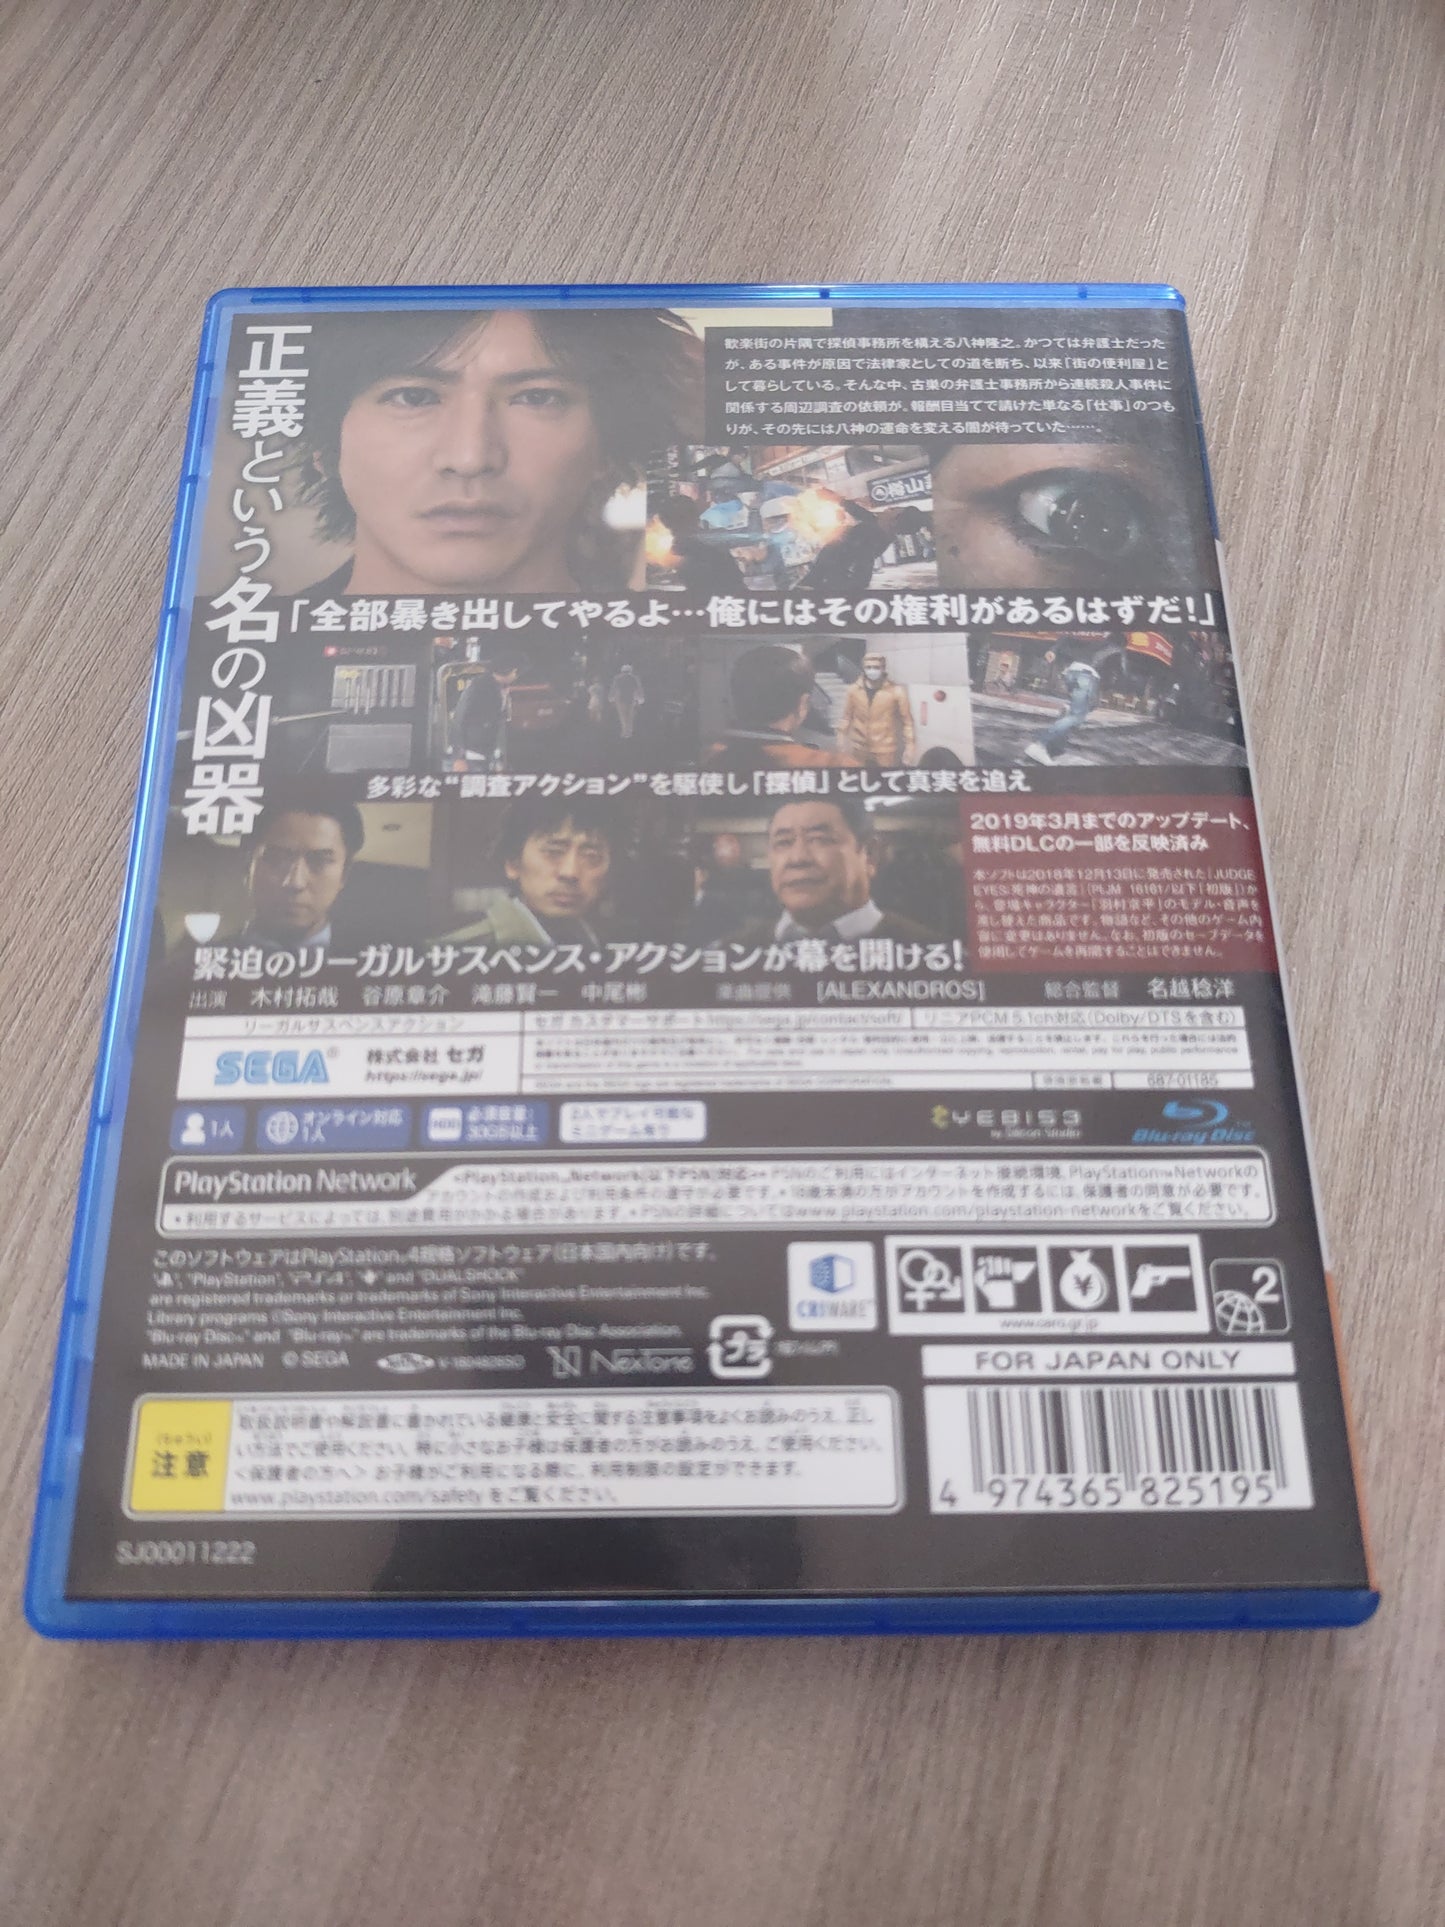 Gioco PS4 sega judge eyes Japan game PlayStation 4